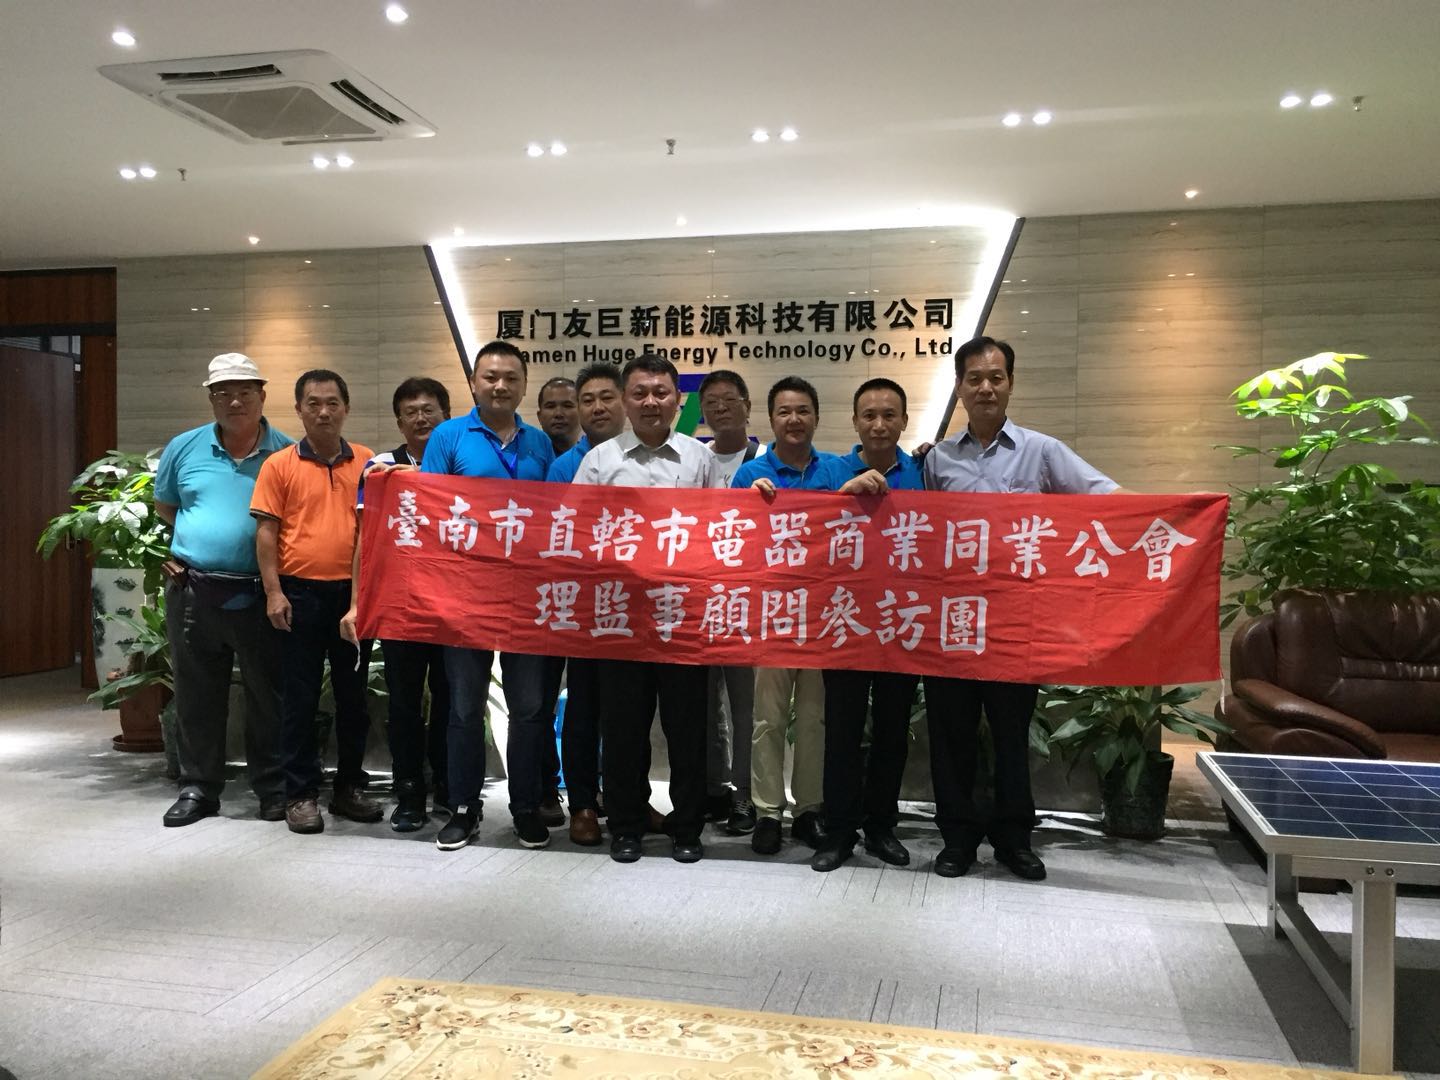 تایوان تاینان انجمن های تجاری لوازم الکتریکی و رهبران کمیته حفاظت از محیط زیست انرژی سبز تایوان از بازدید